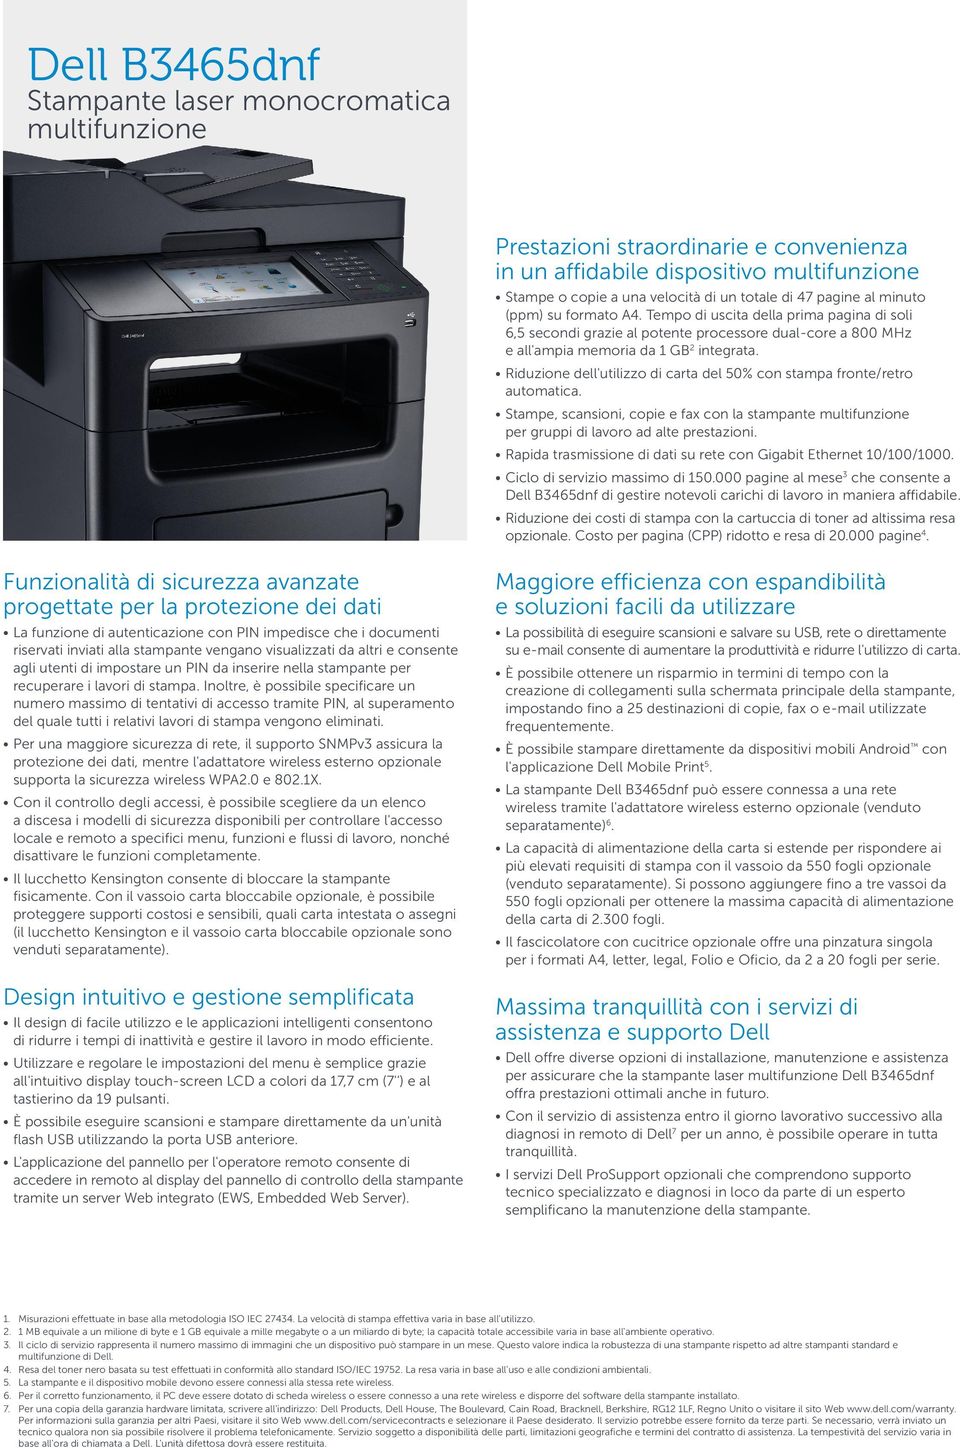 Riduzione dell'utilizzo di carta del 50% con stampa fronte/retro automatica. Stampe, scansioni, copie e fax con la stampante per gruppi di lavoro ad alte prestazioni.